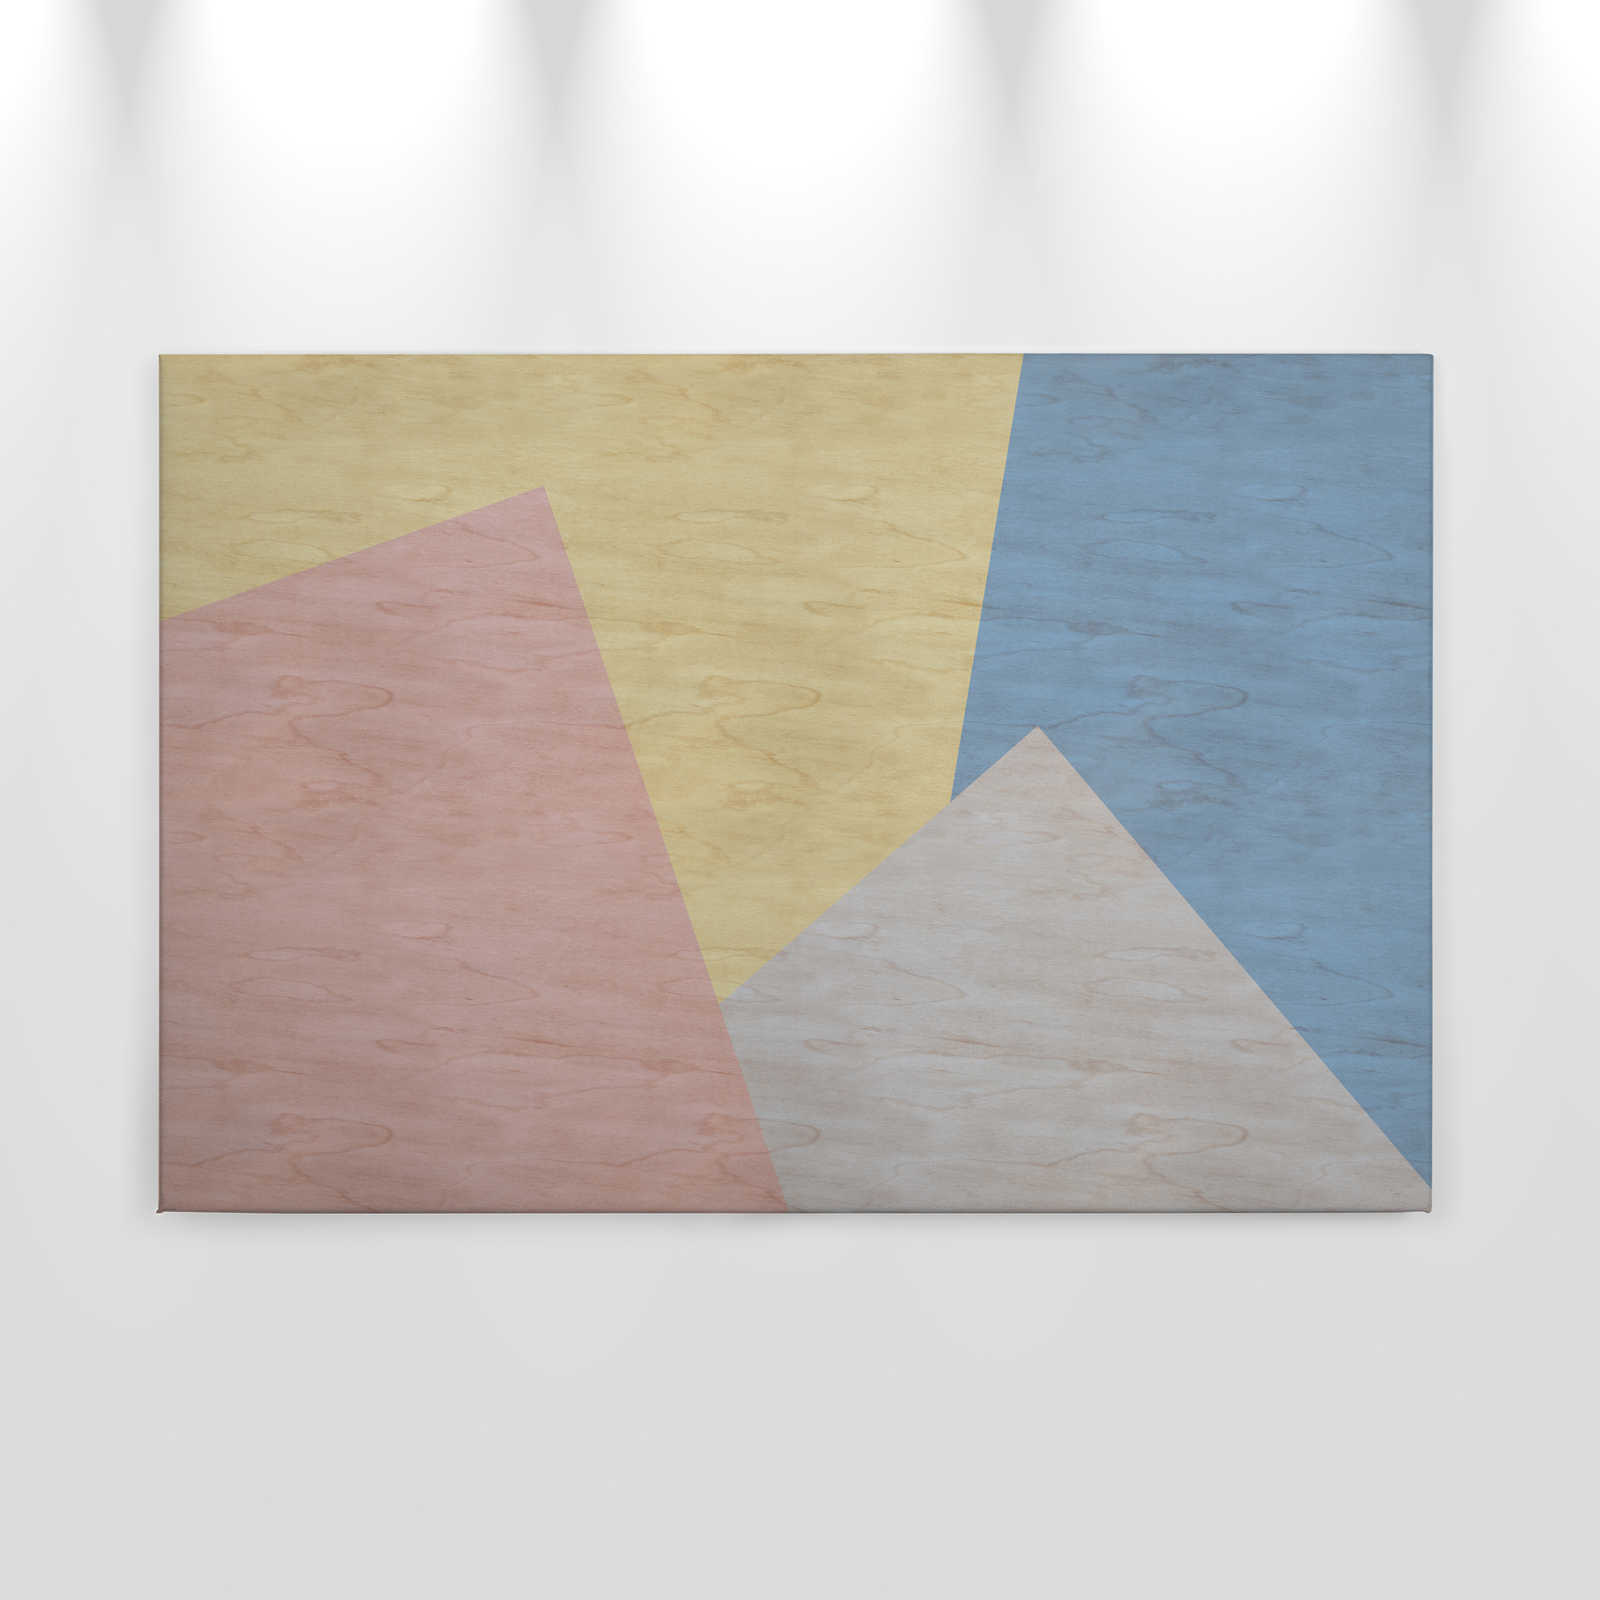             Inaly 3 - Tableau abstrait coloré sur toile - À structure en contreplaqué - 0,90 m x 0,60 m
        